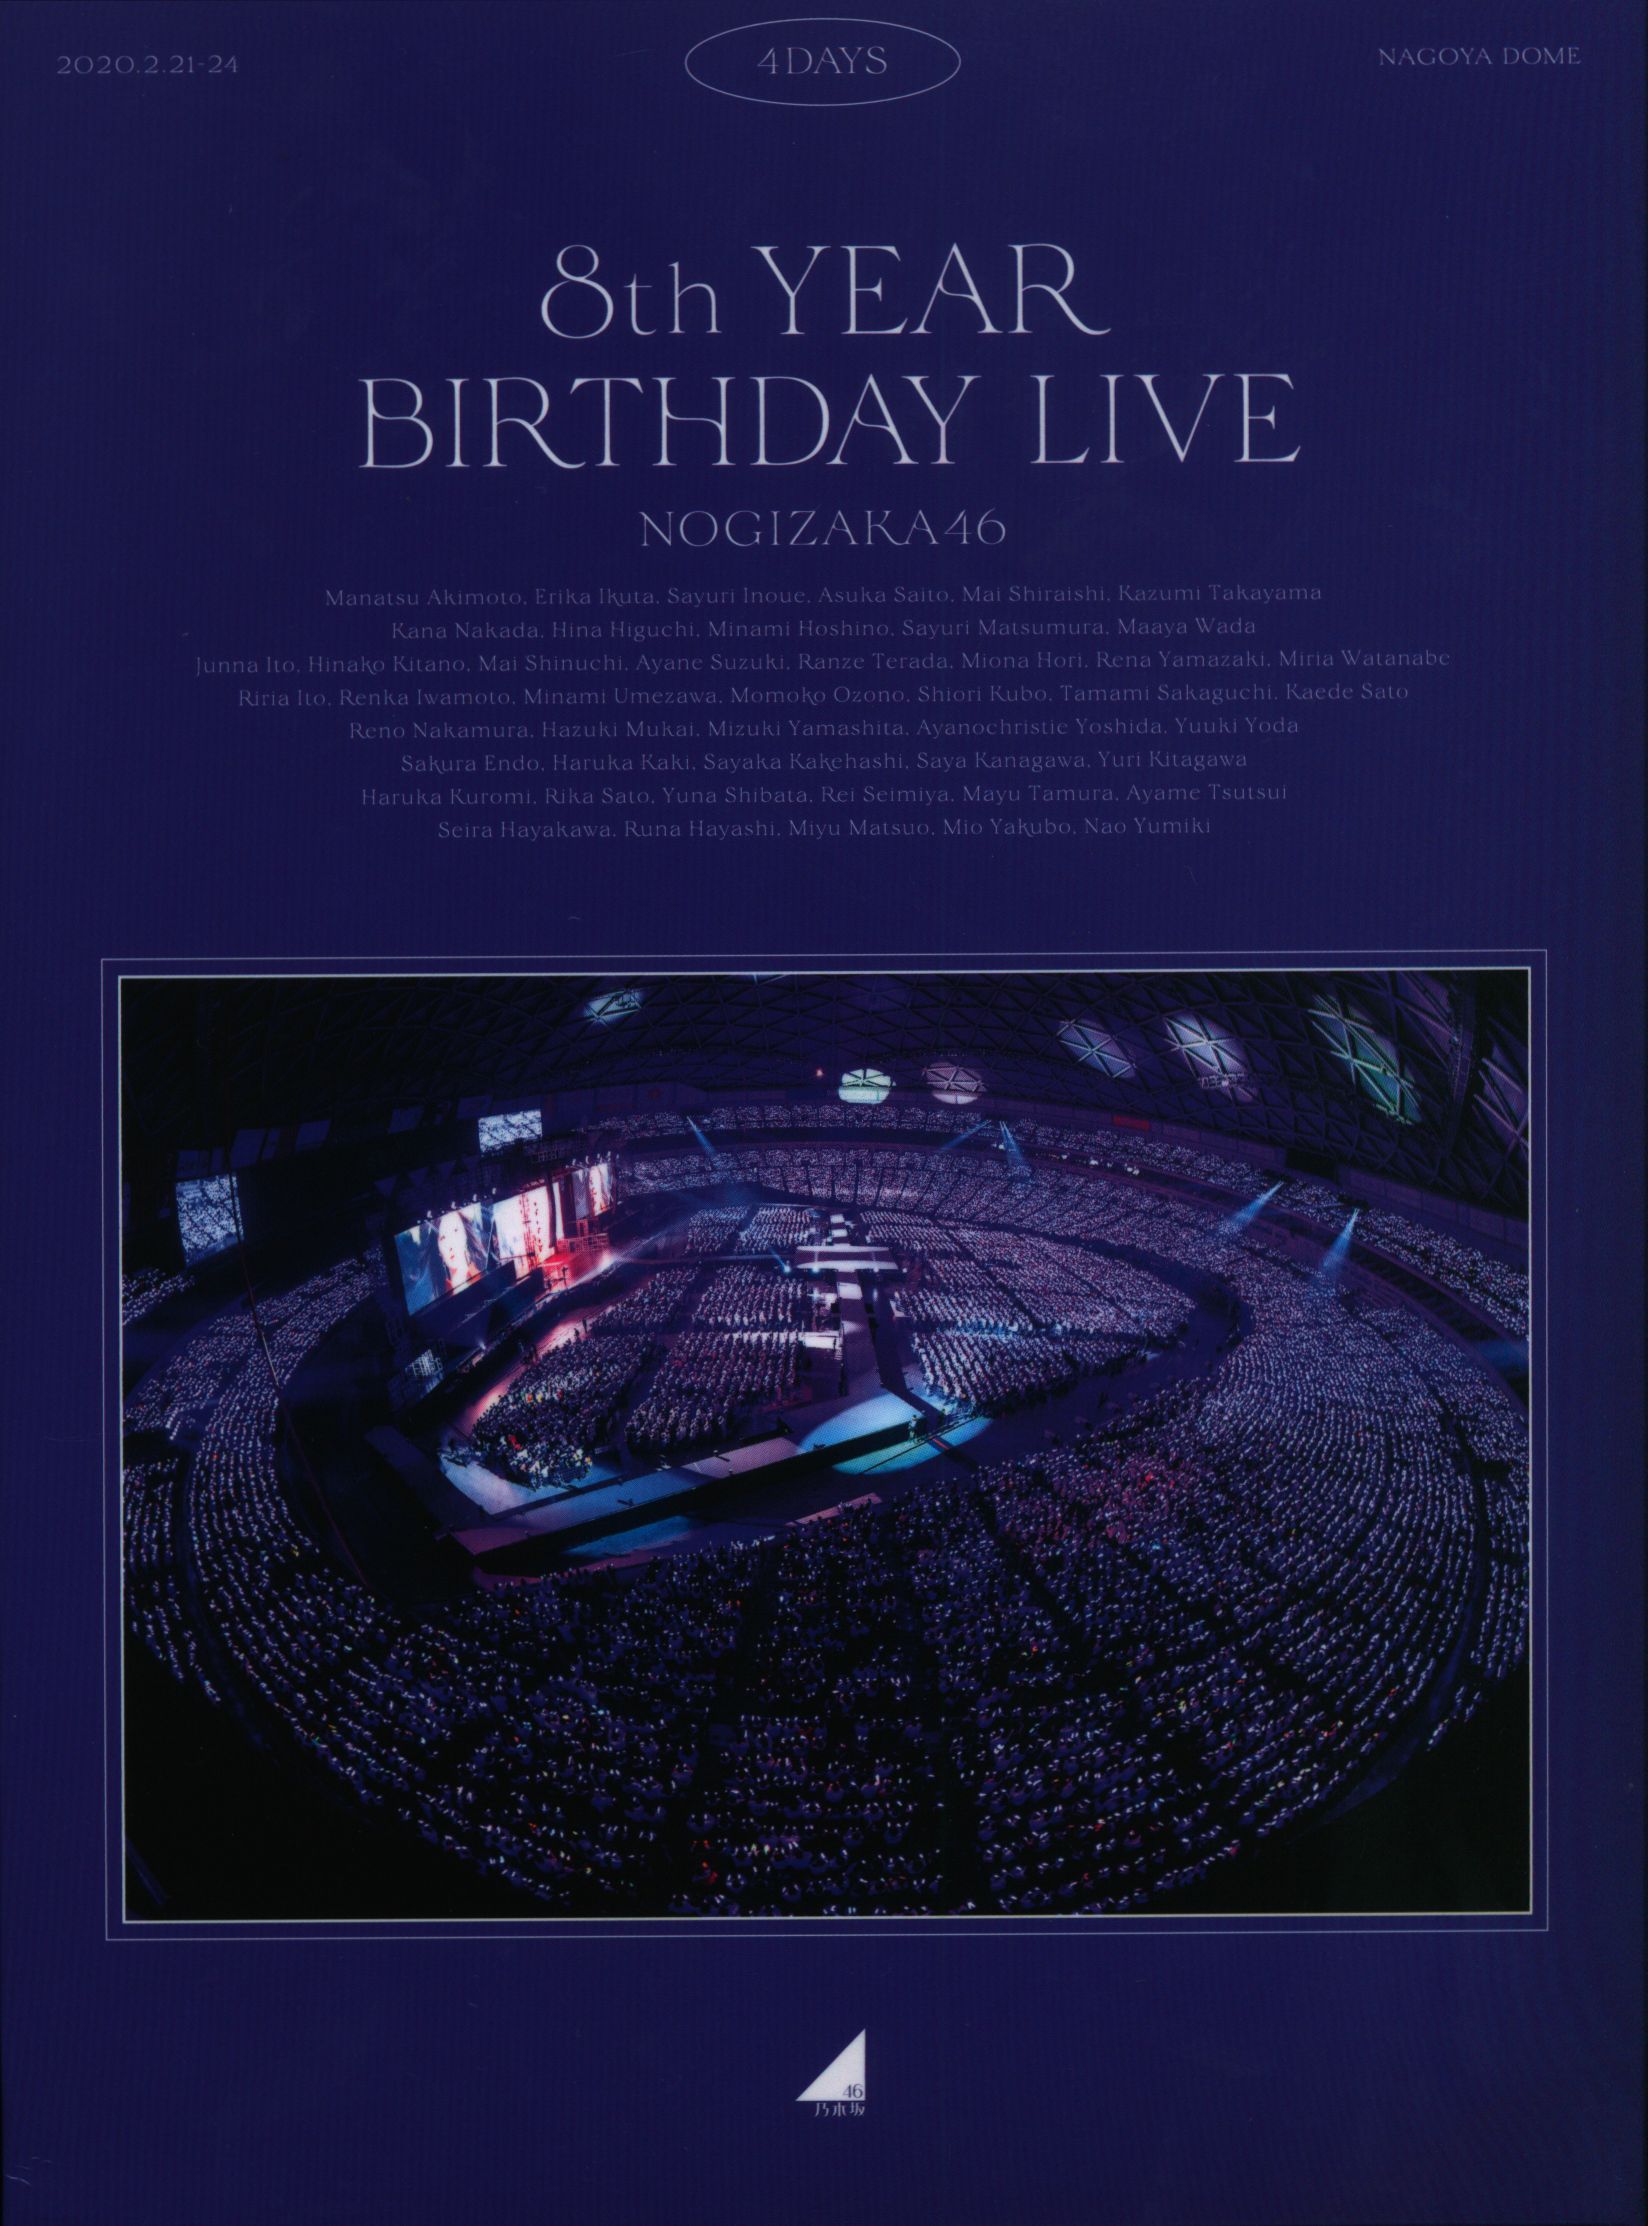 乃木坂46 8th YEAR BIRTHDAY LIVE 4DAYS